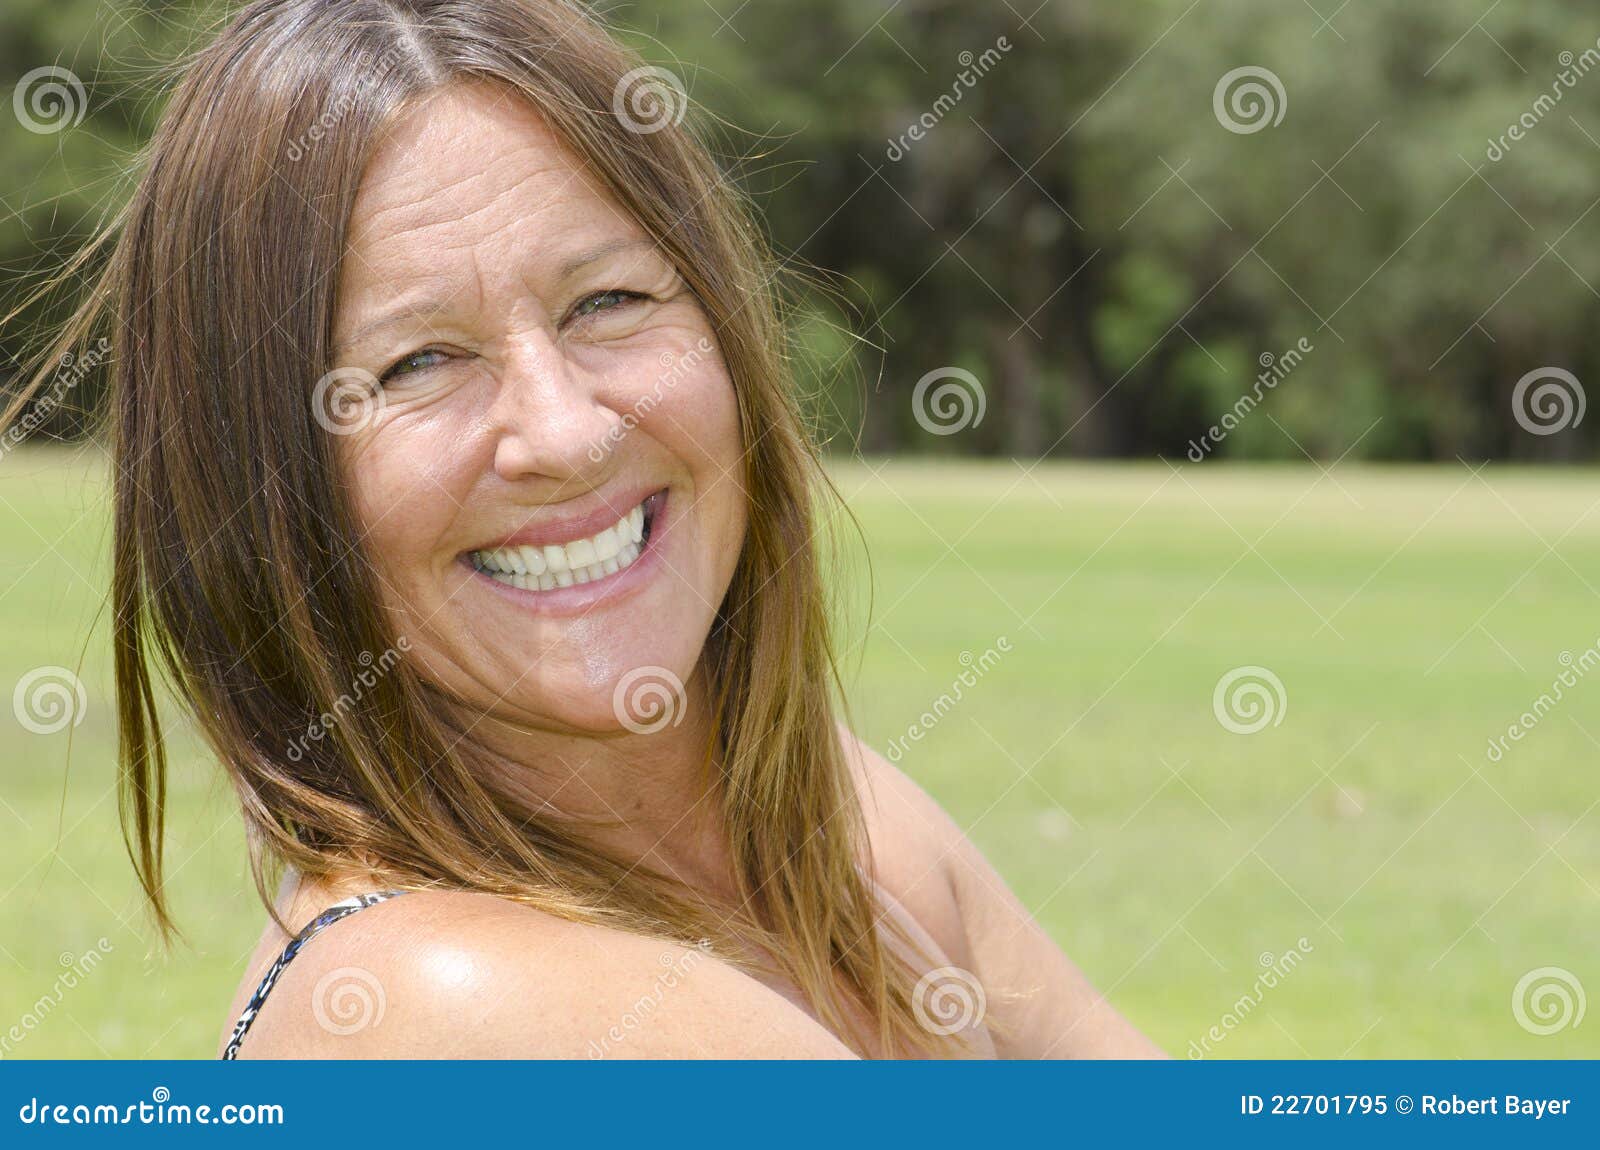 Mature Woman Enjoying Happy Lifestyle Stock Image Image Of Life